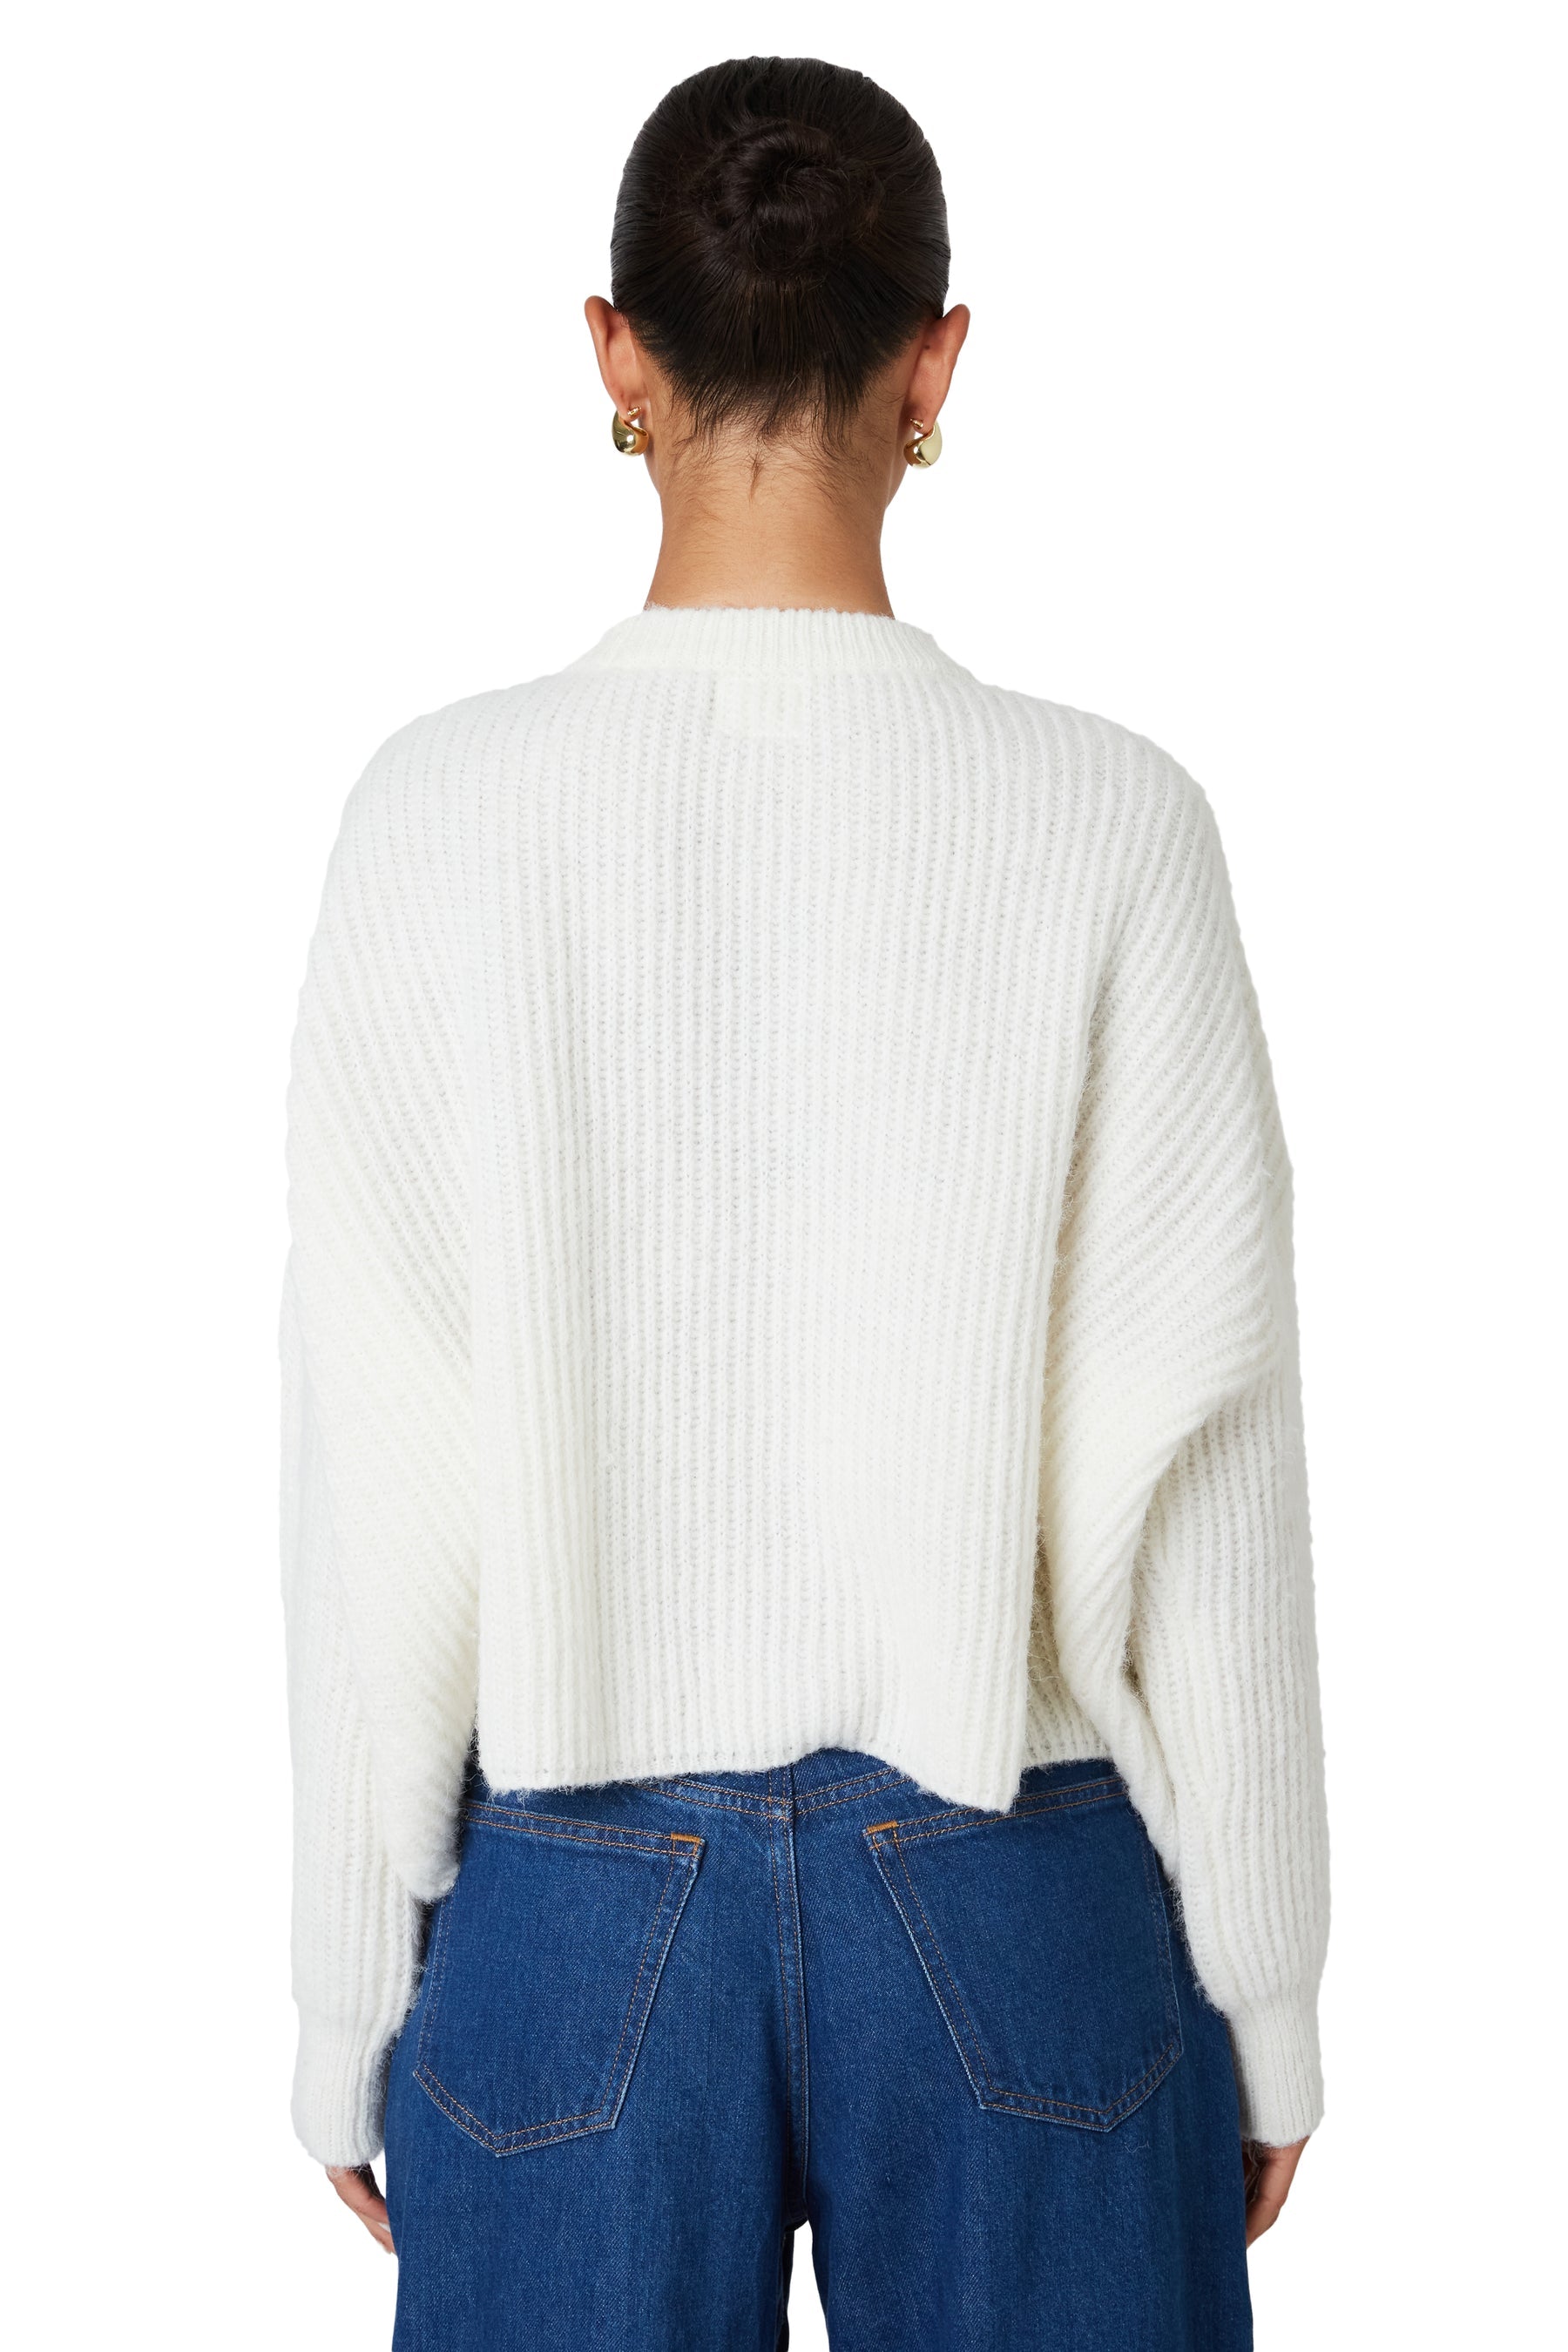 NIA Ariana Sweater White